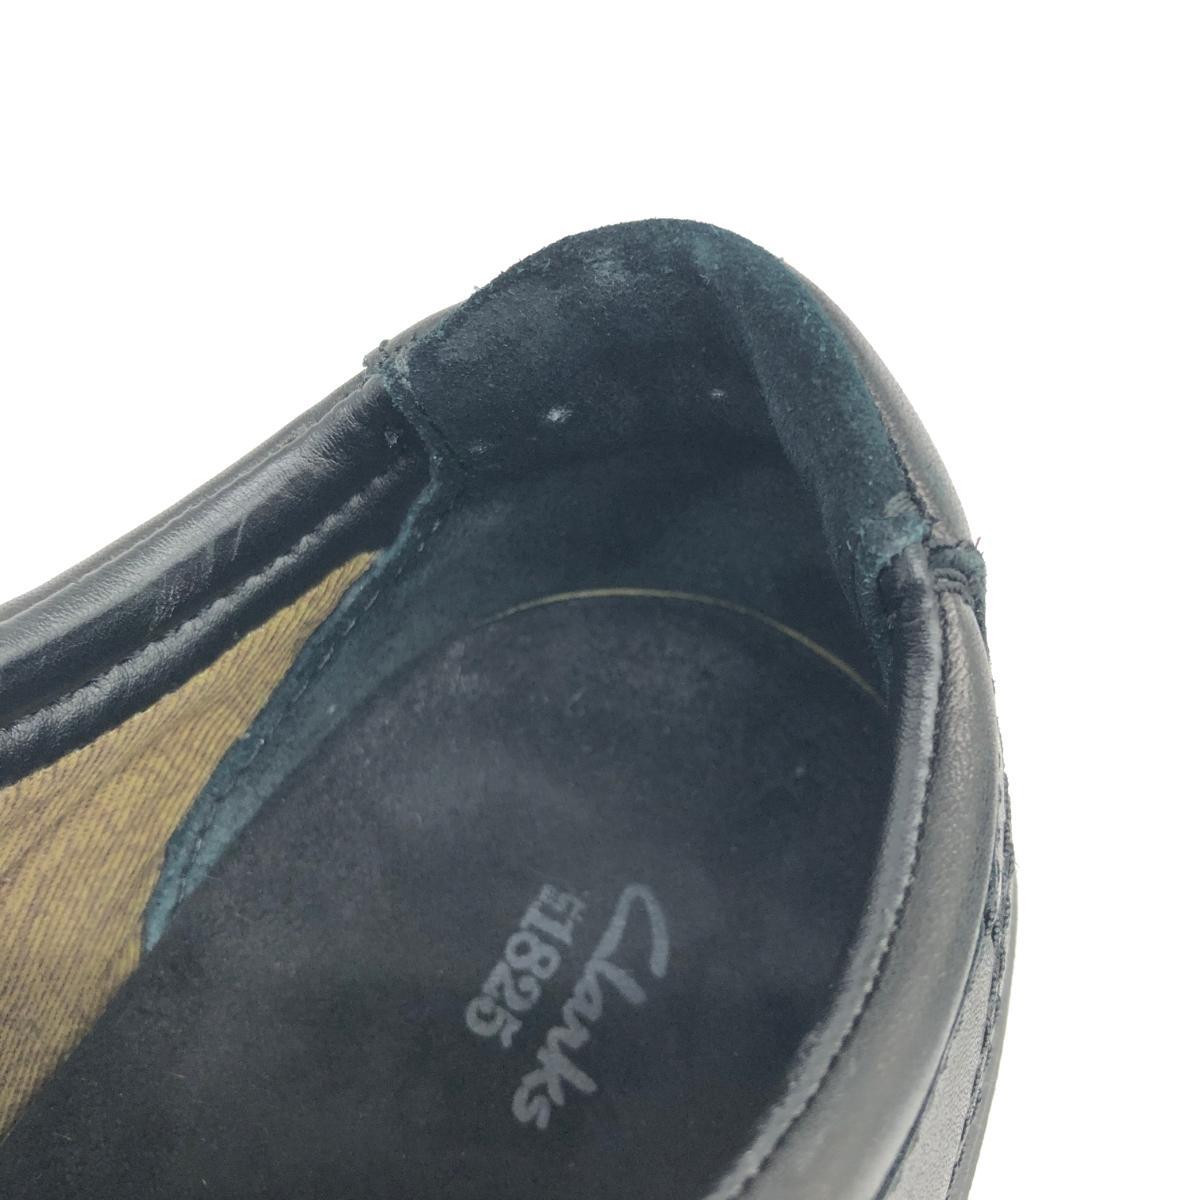 *Clarks Clarks подушка подошва спортивные туфли US7 1/2* чёрная кожа мужской обувь обувь sneakers